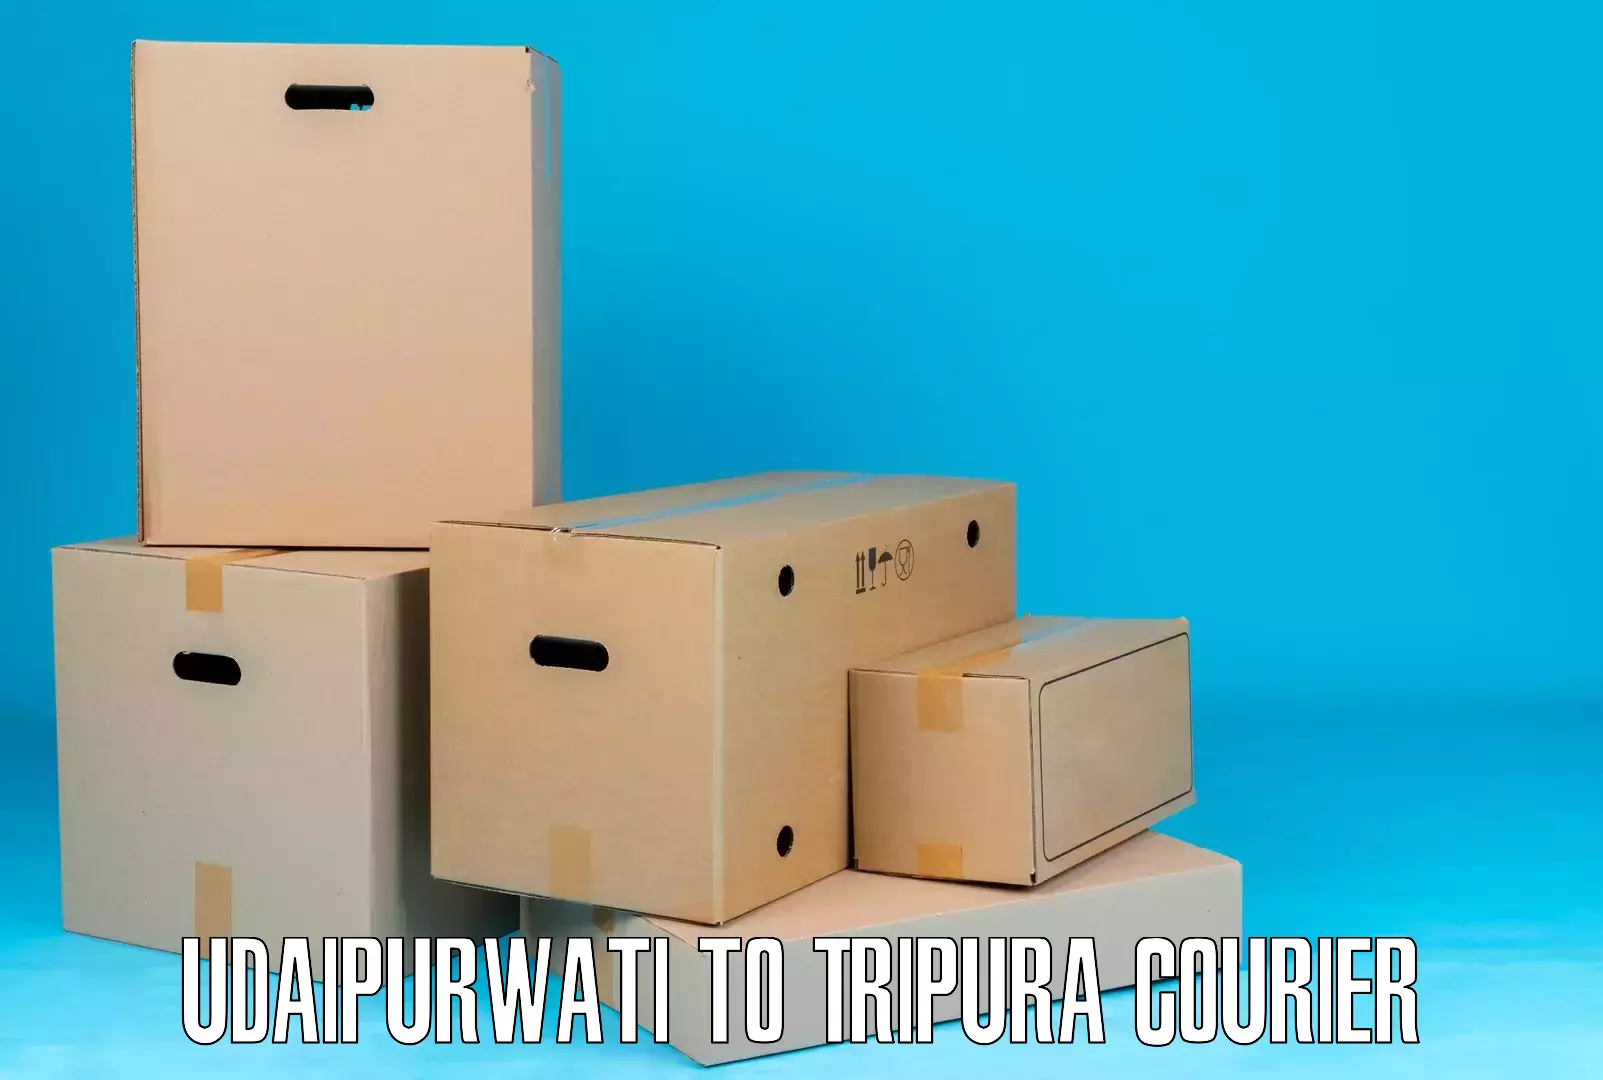 Efficient cargo handling Udaipurwati to Bishalgarh